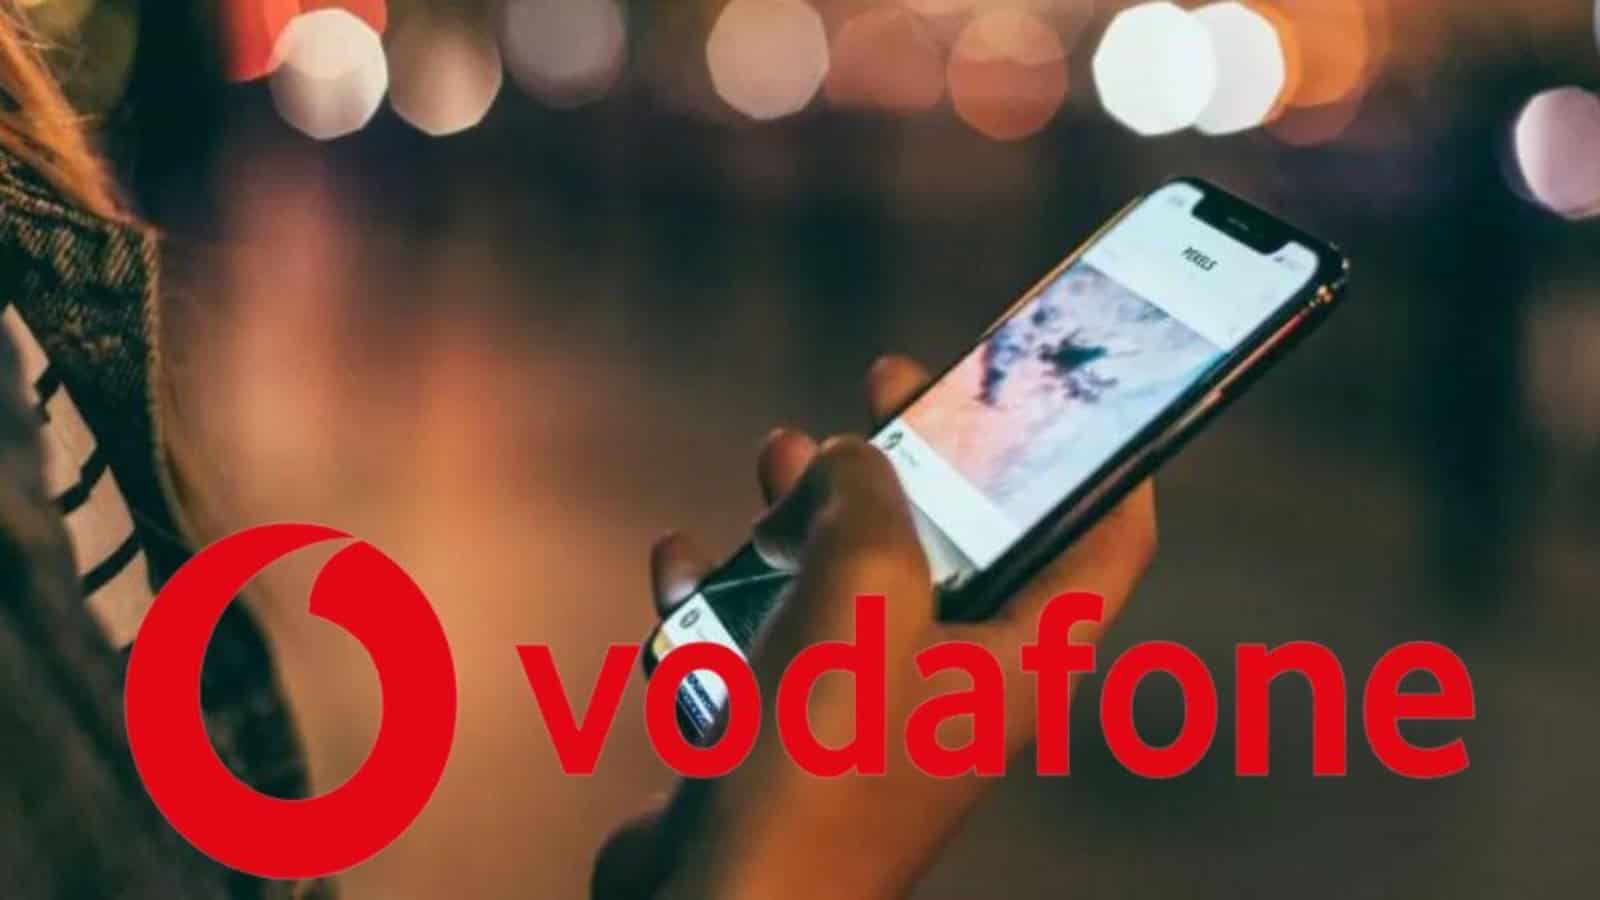 Vodafone, offerte Silver a partire da 7,99 euro: ecco fino a 200 GB